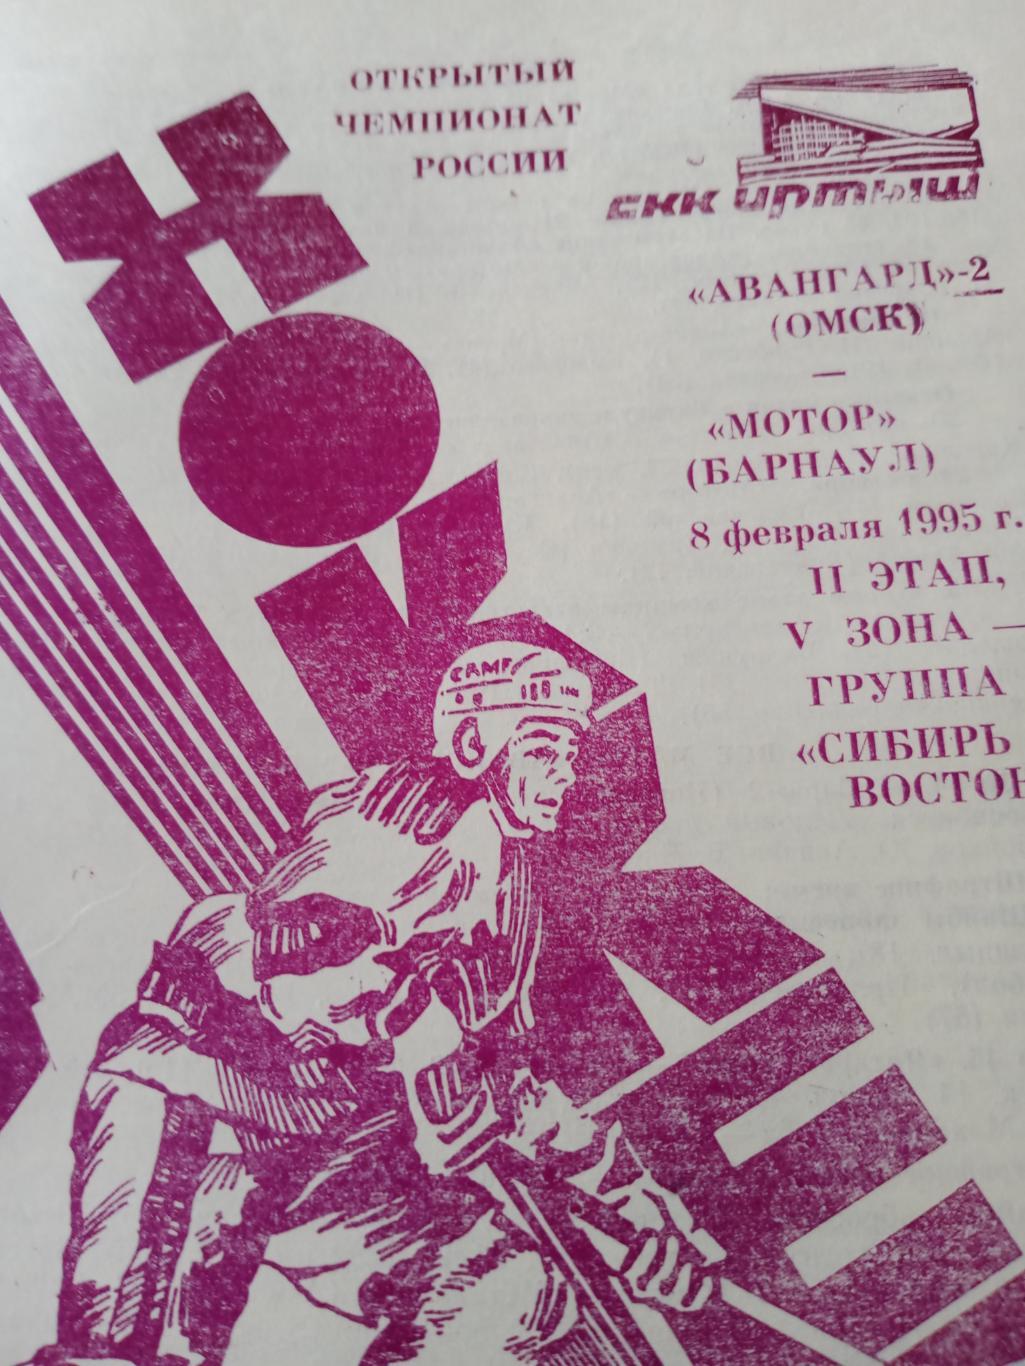 Авангард-2 Омск - Мотор Барнаул. 8 февраля 1995 год